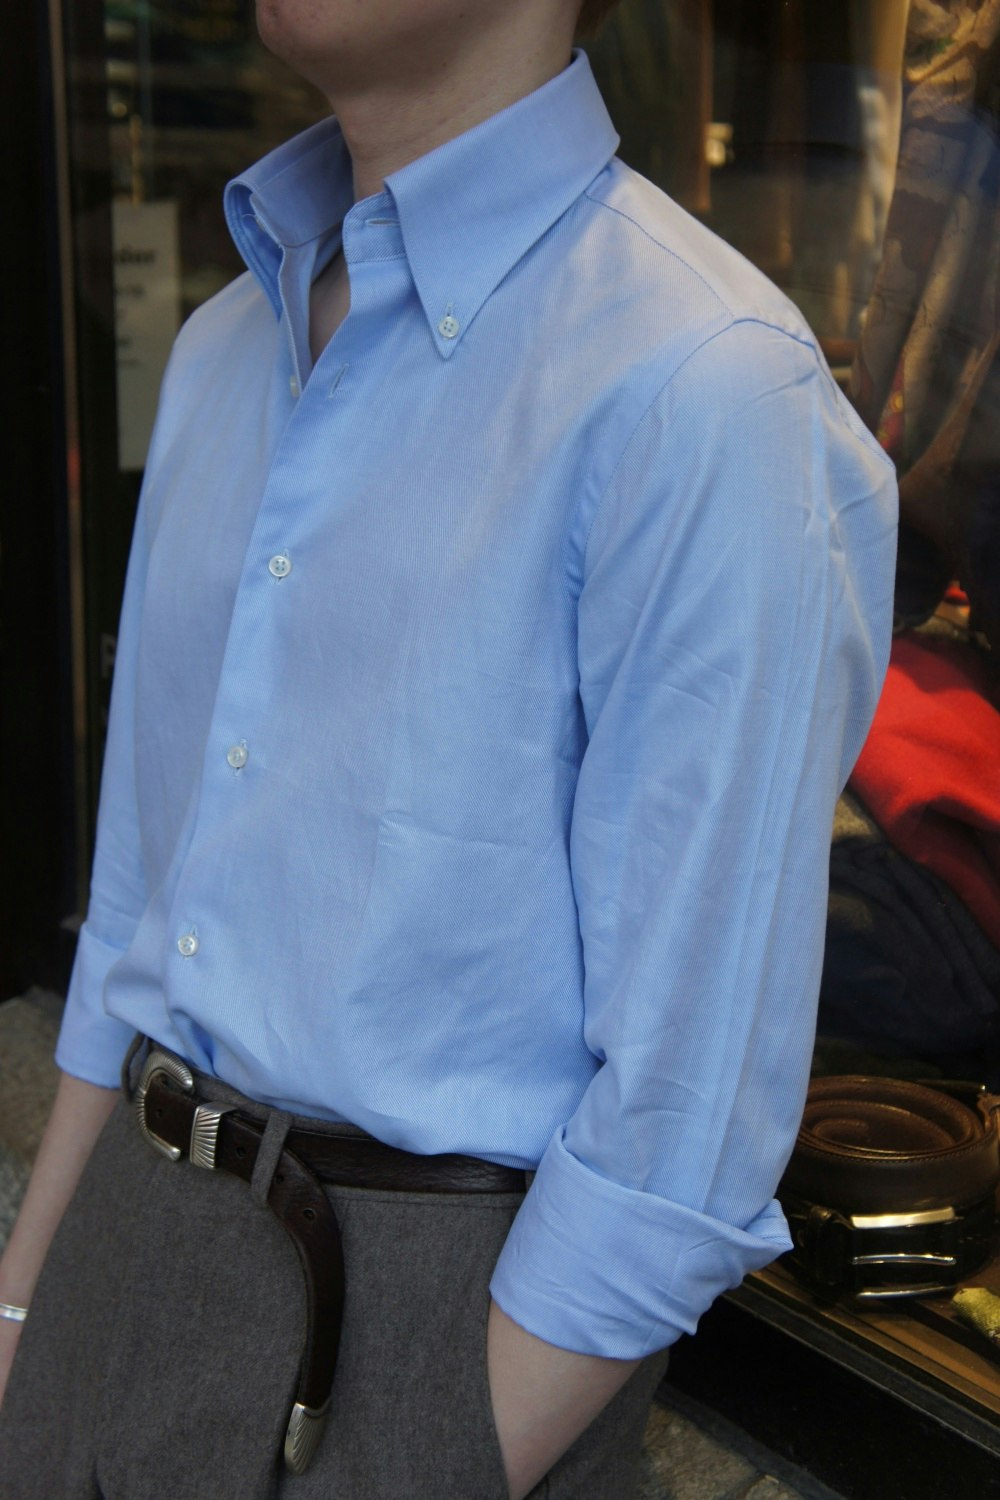 Enfärgad Royale Twillskjorta - Button Down - Ljusblå